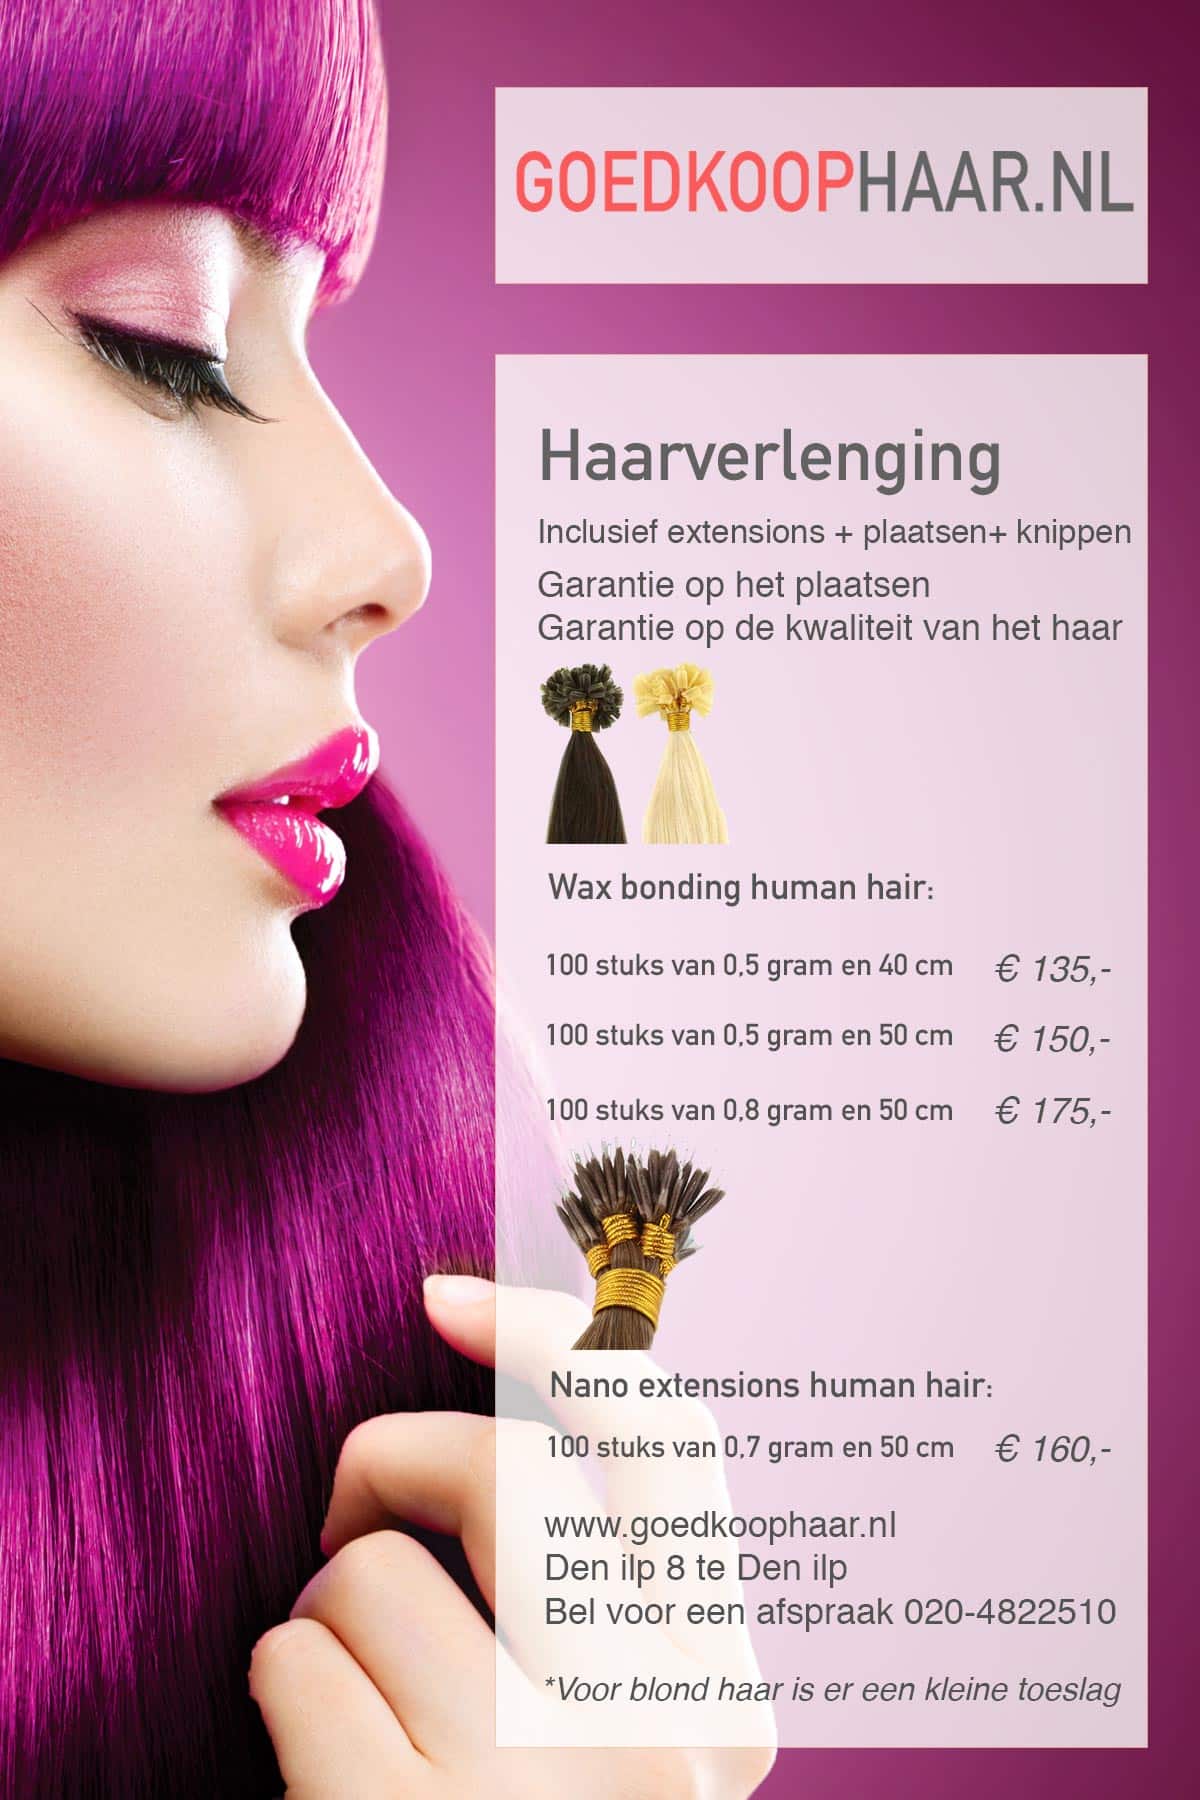 Aarzelen slim dozijn Prijslijst van onze salon om goedkoop uw hairextensions te plaatsen.